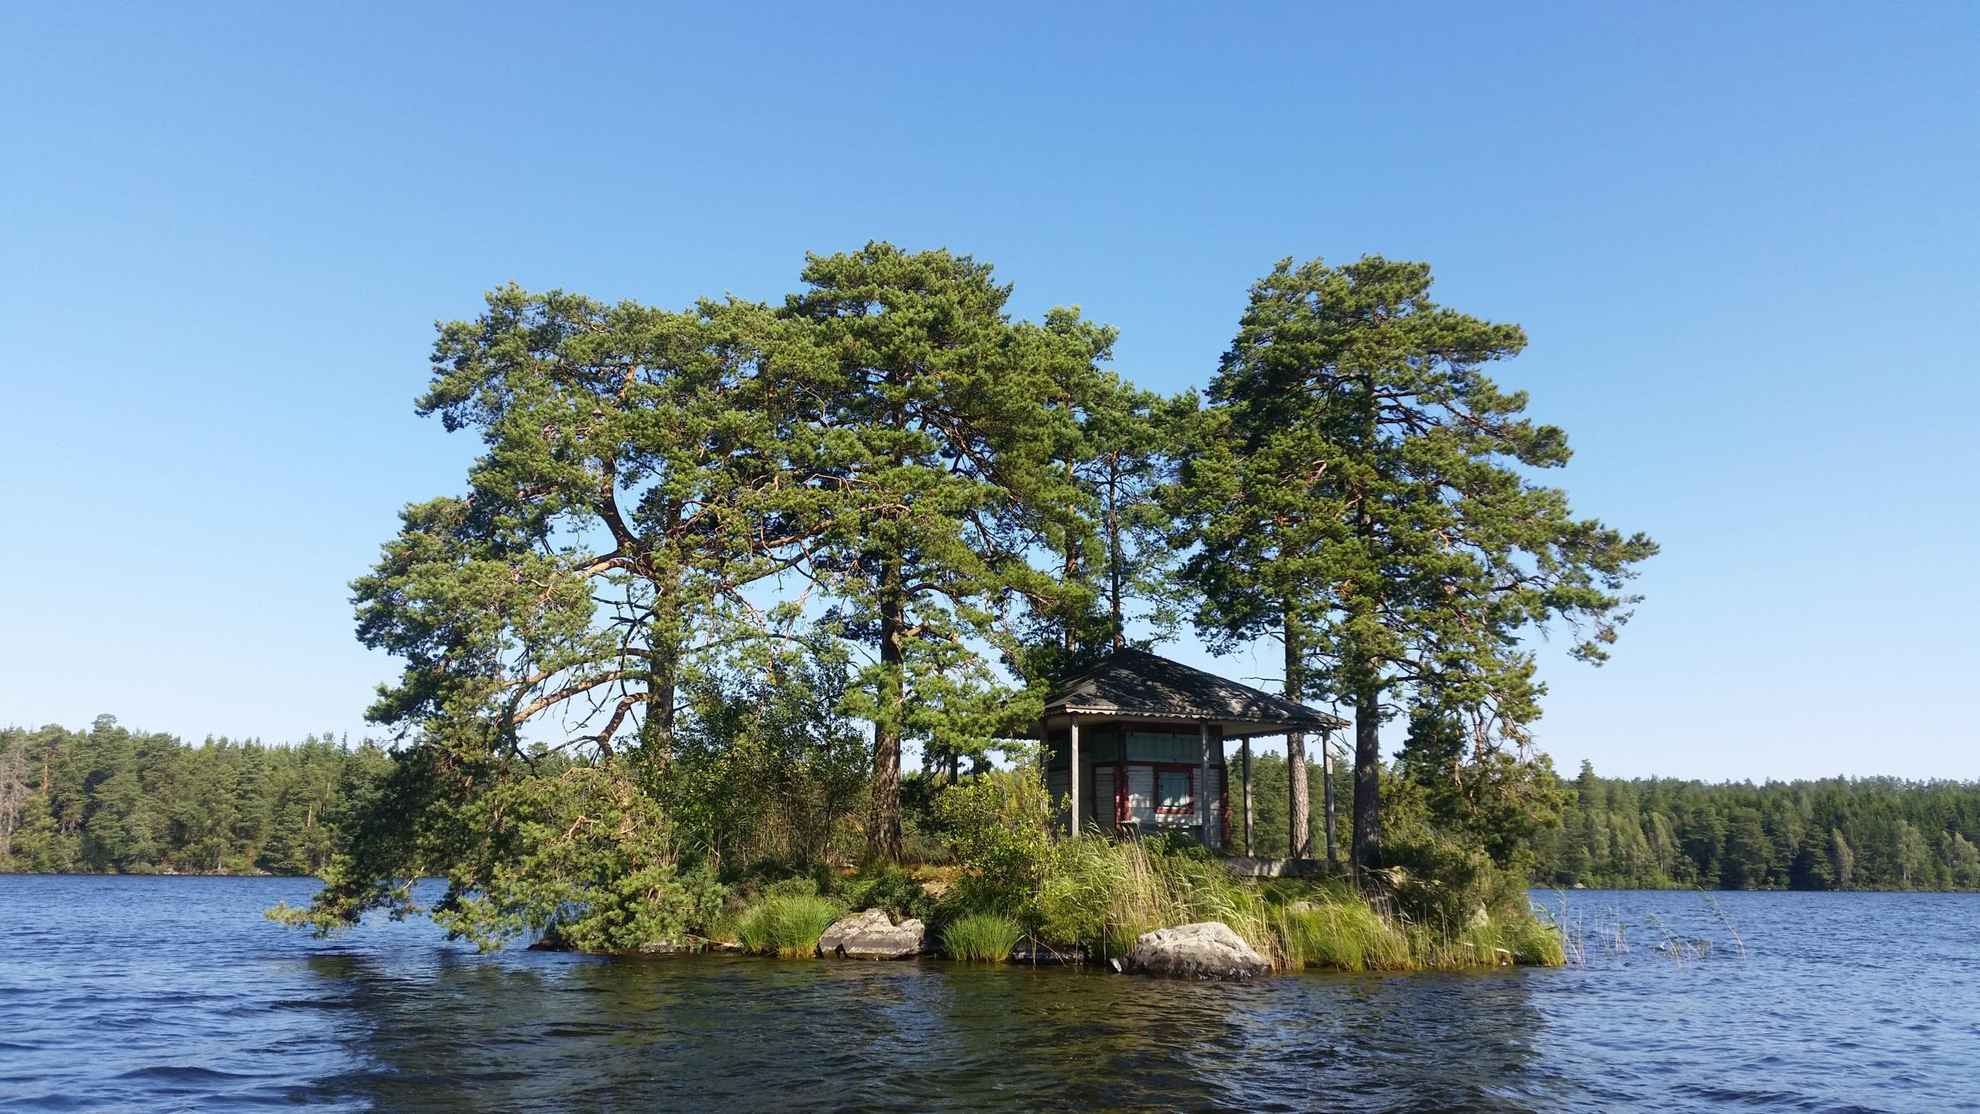 Eine bewilderte Insel auf welcher sich eine Hütte beifndet. Die Insel ist umgeben von einem See und einem Waldufer.